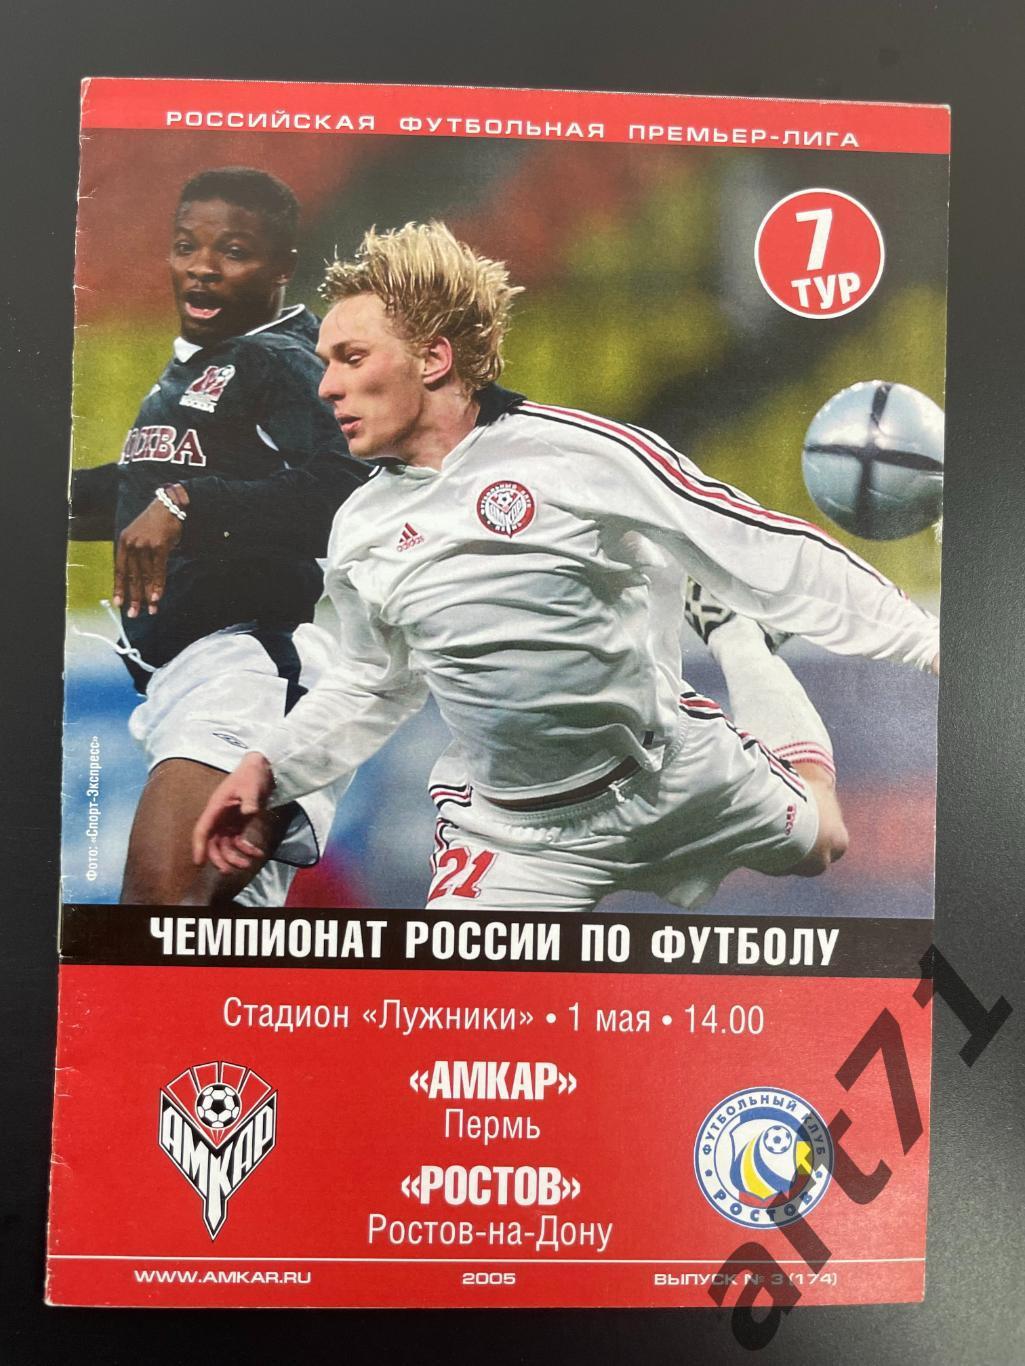 Амкар Пермь - ФК Ростов 2005